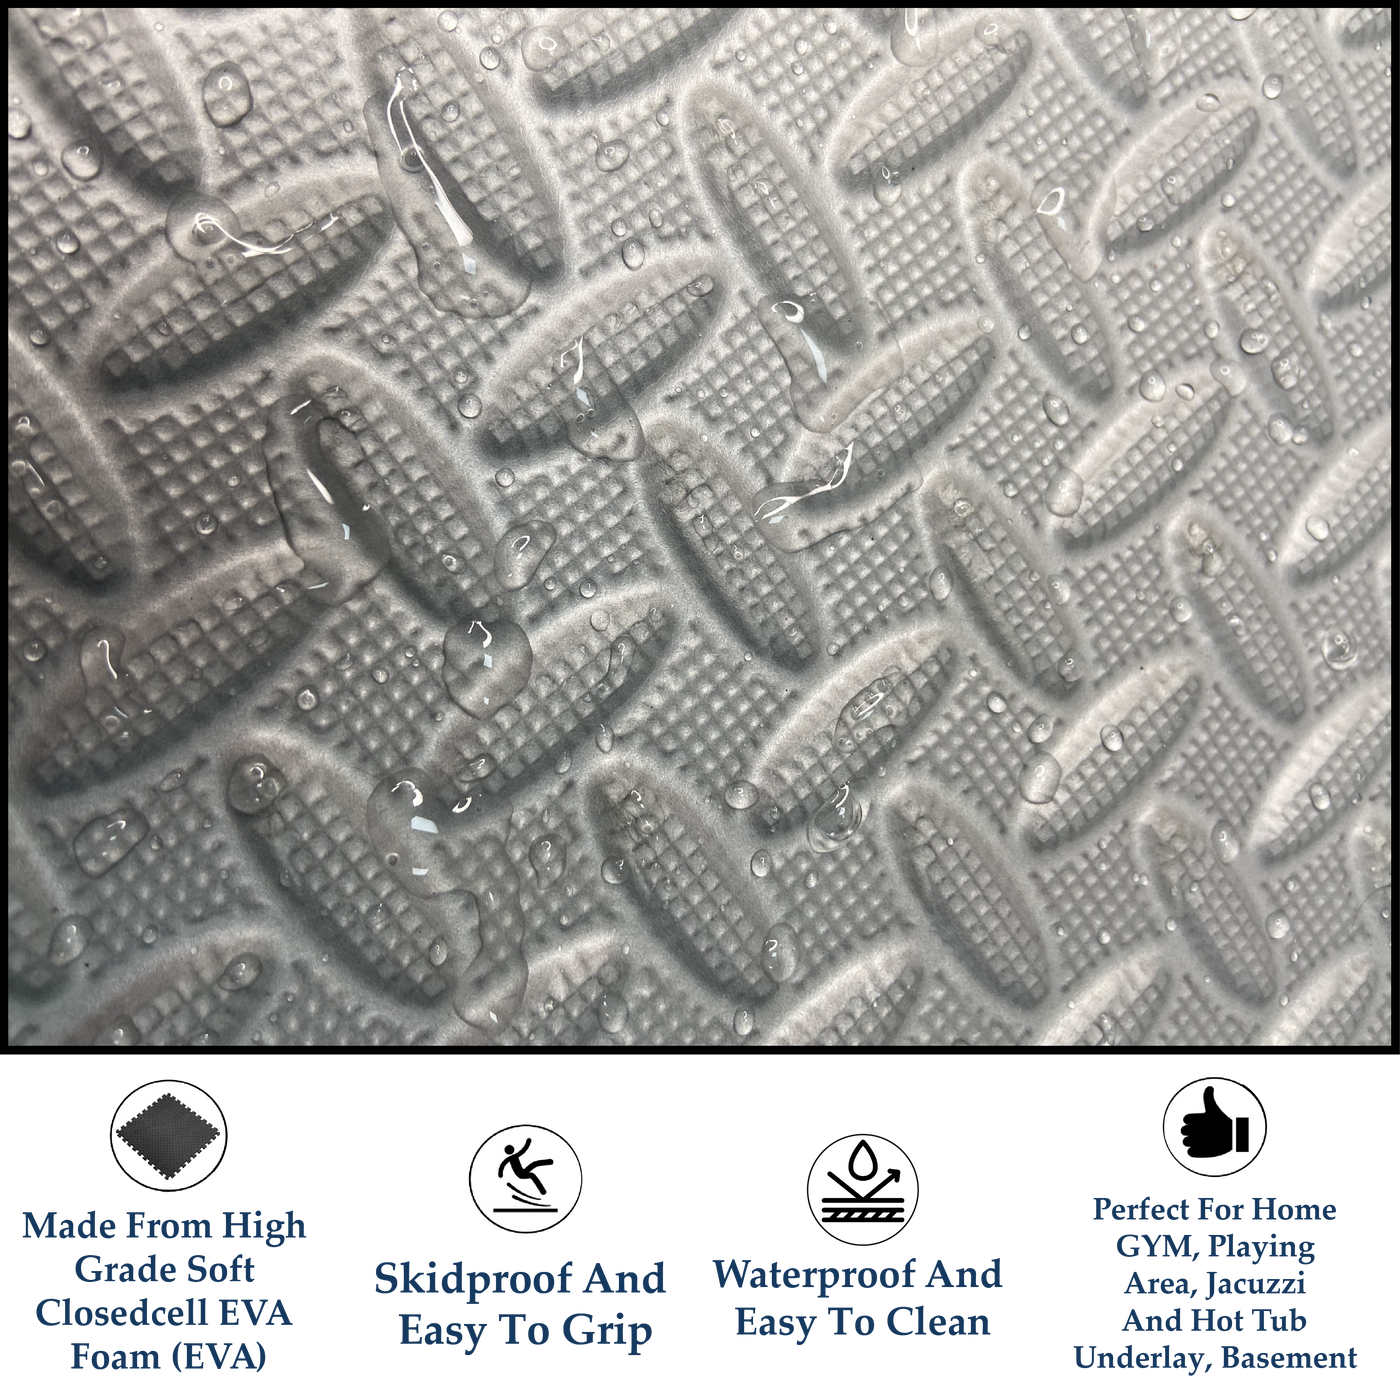 Interlocking EVA Floor Mat - Pink, Grey & White (Set of 6pcs.) - 12mm